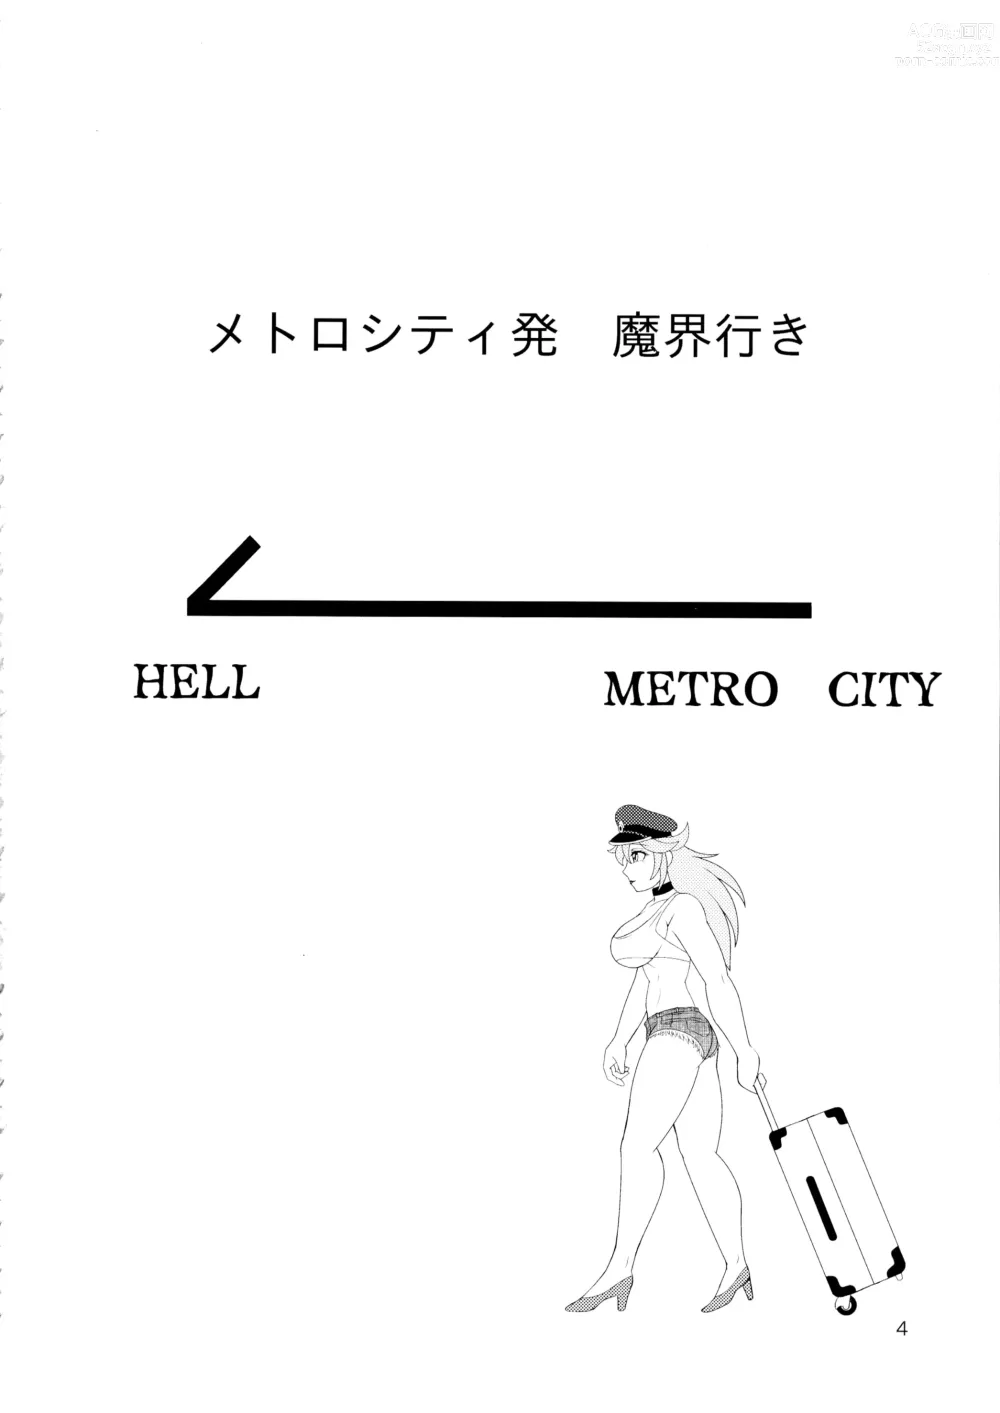 Page 4 of doujinshi Metro City Hatsu Makai Iki